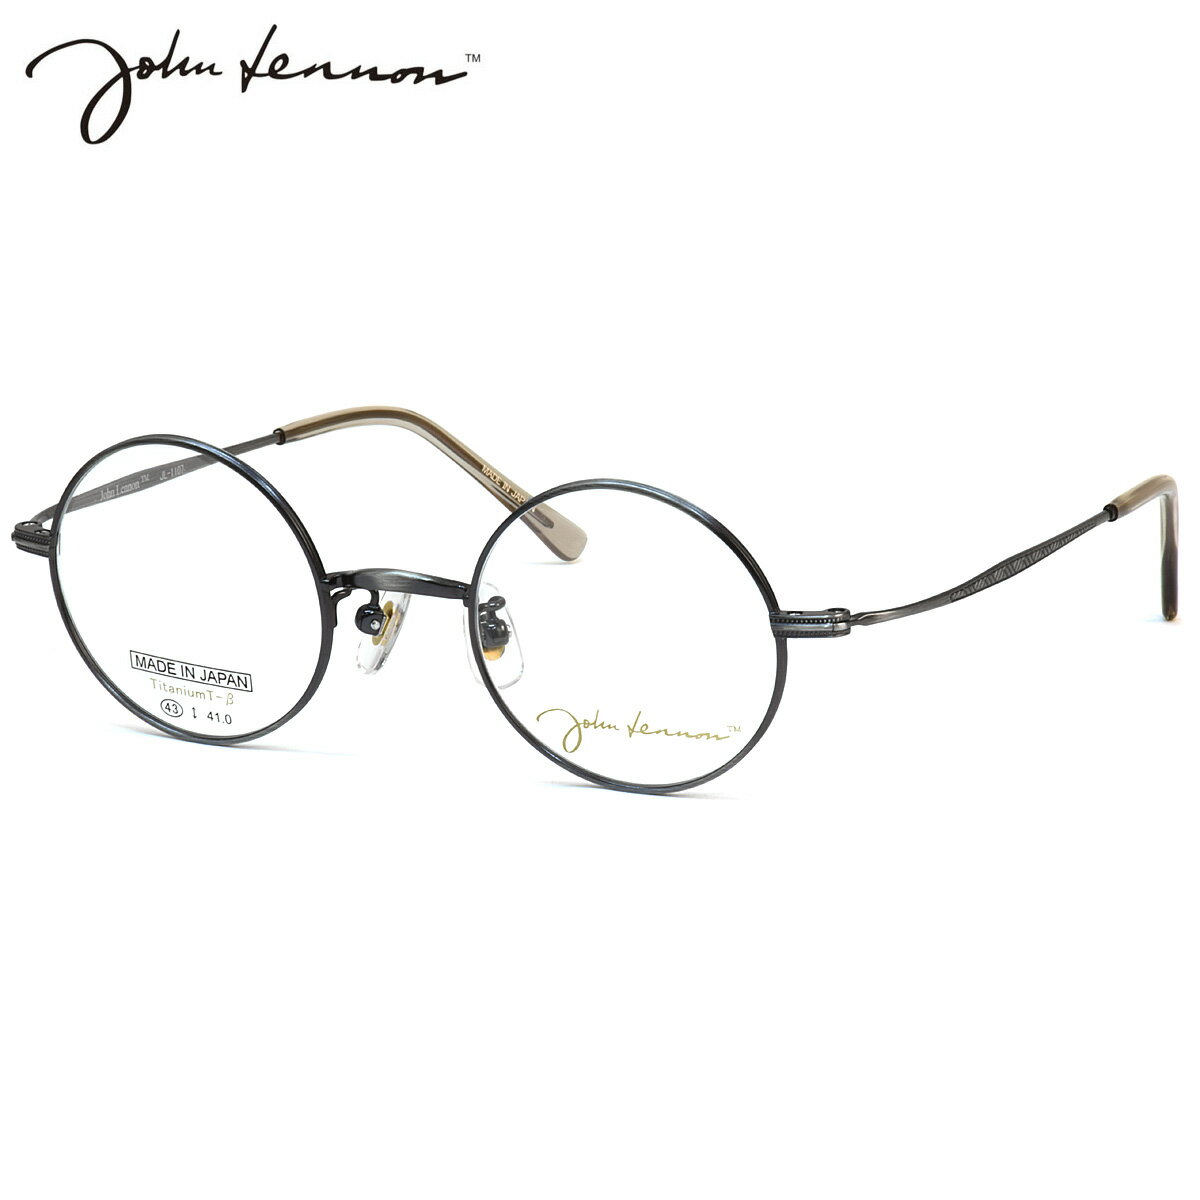 ジョンレノン JL-1107 4 43 メガネ John Lennon チタン βチタン 軽い シルバー日本製 国産 ビートルズ オノヨーコ 丸眼鏡 メンズ レディース